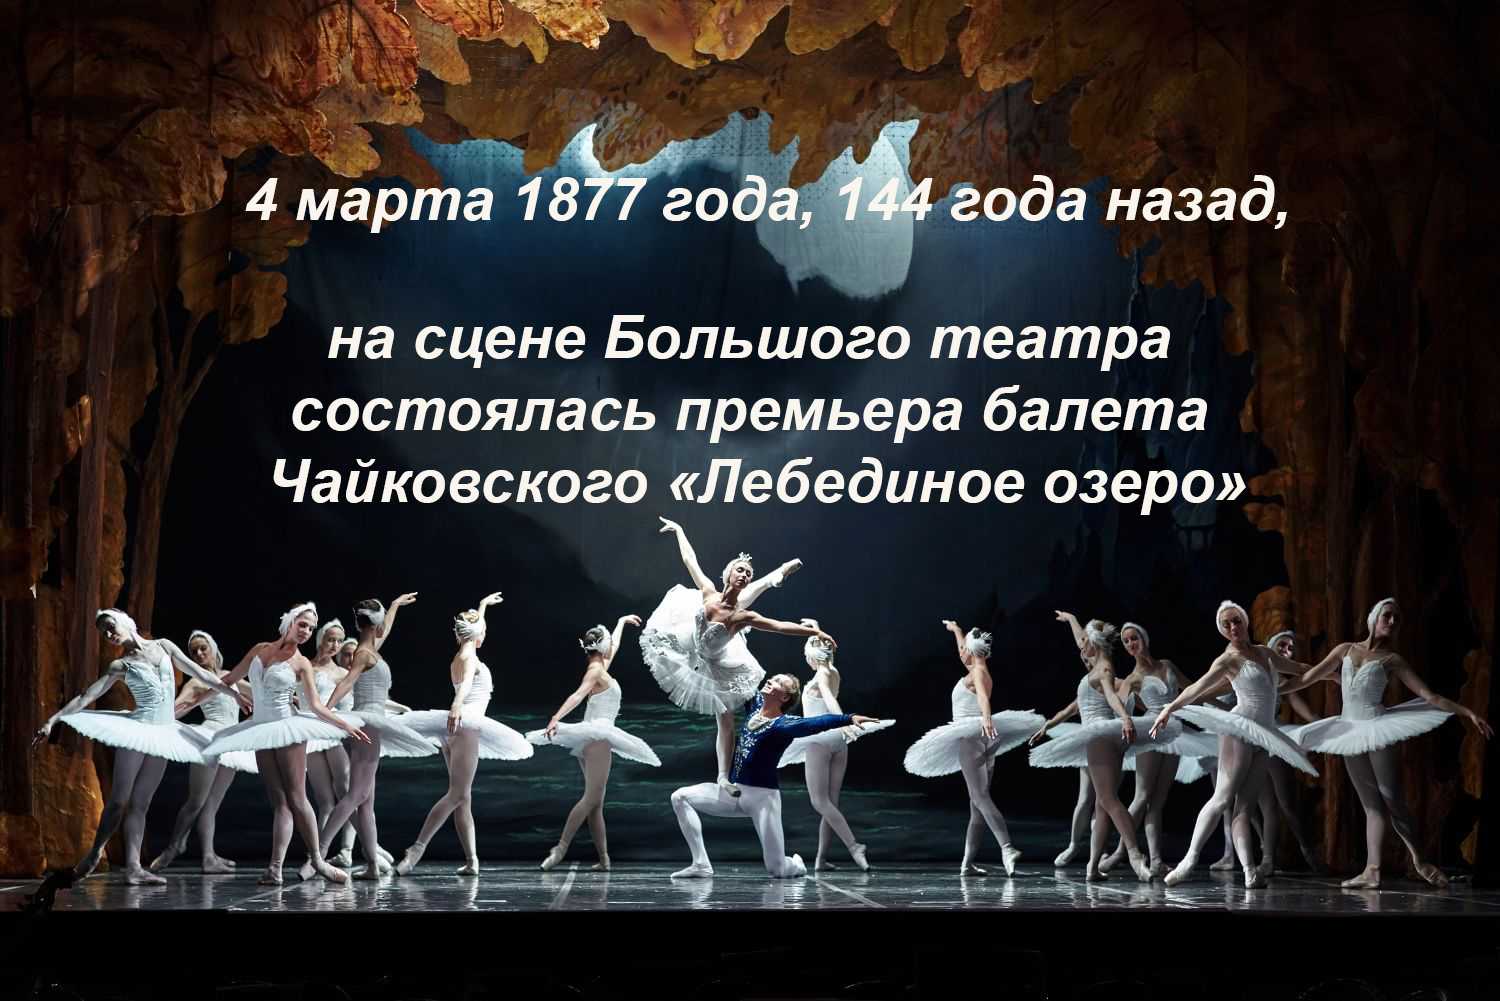 П. Чайковский «Лебединое озеро» театр